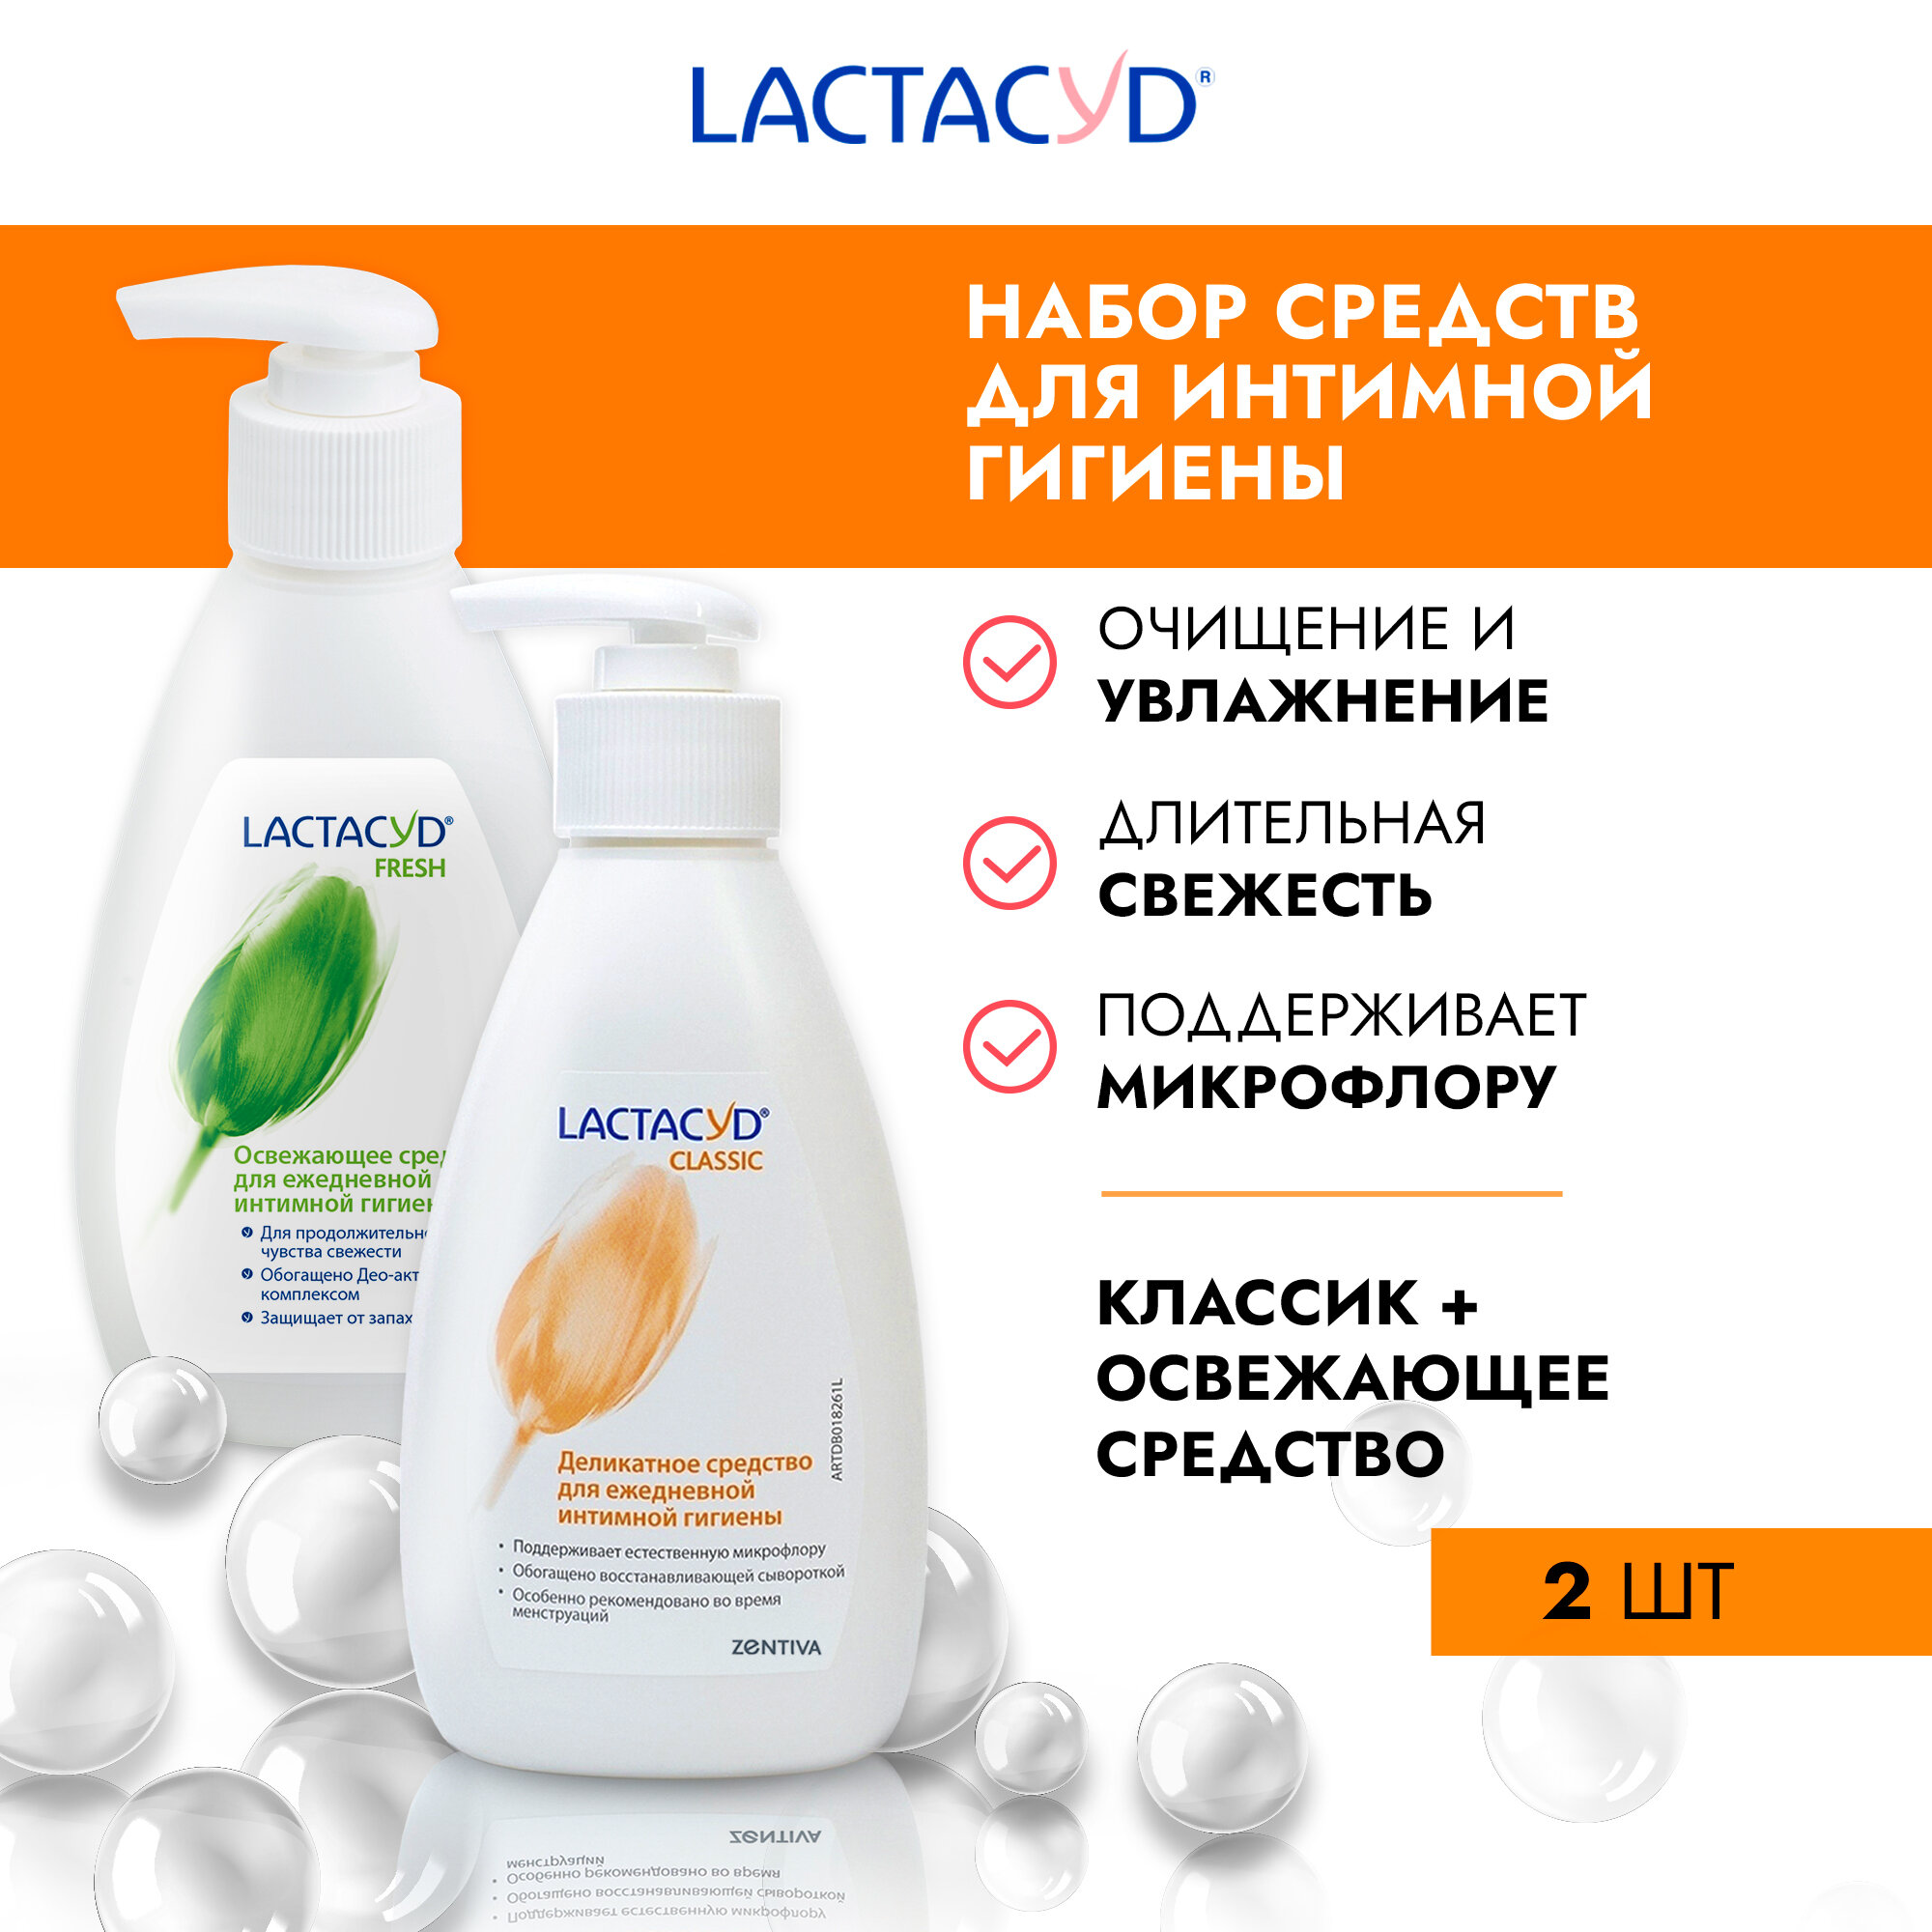 Lactacyd комплект Лактацид классический (Classic)+ Лактацид Продолжительная Свежесть (Fresh)